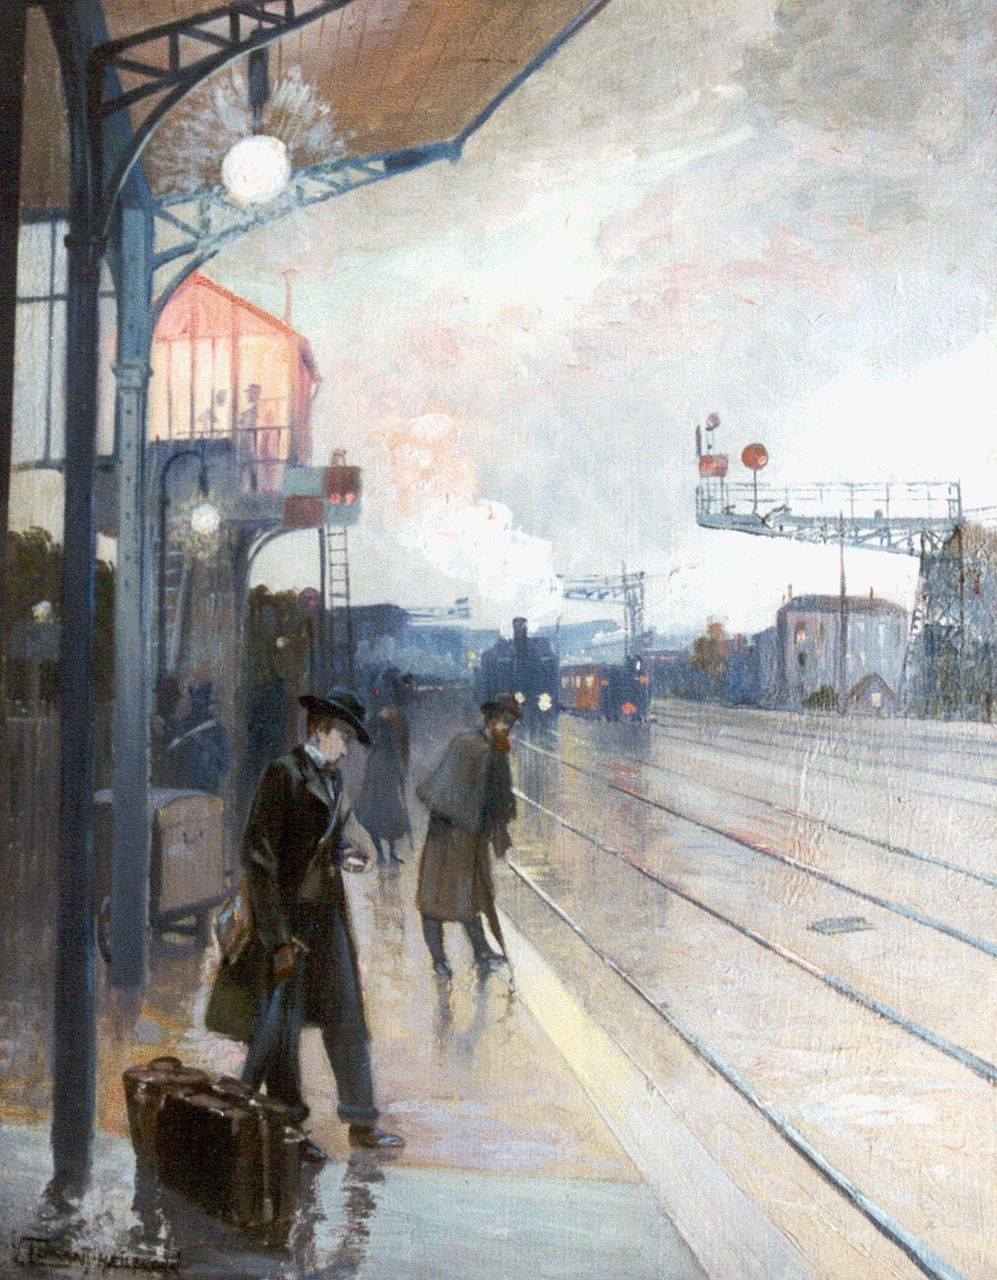 Vincent Lorant-Heilbronn | Station van Asnières, olieverf op paneel, 35,0 x 26,8 cm, gesigneerd l.o. en gedateerd 1900